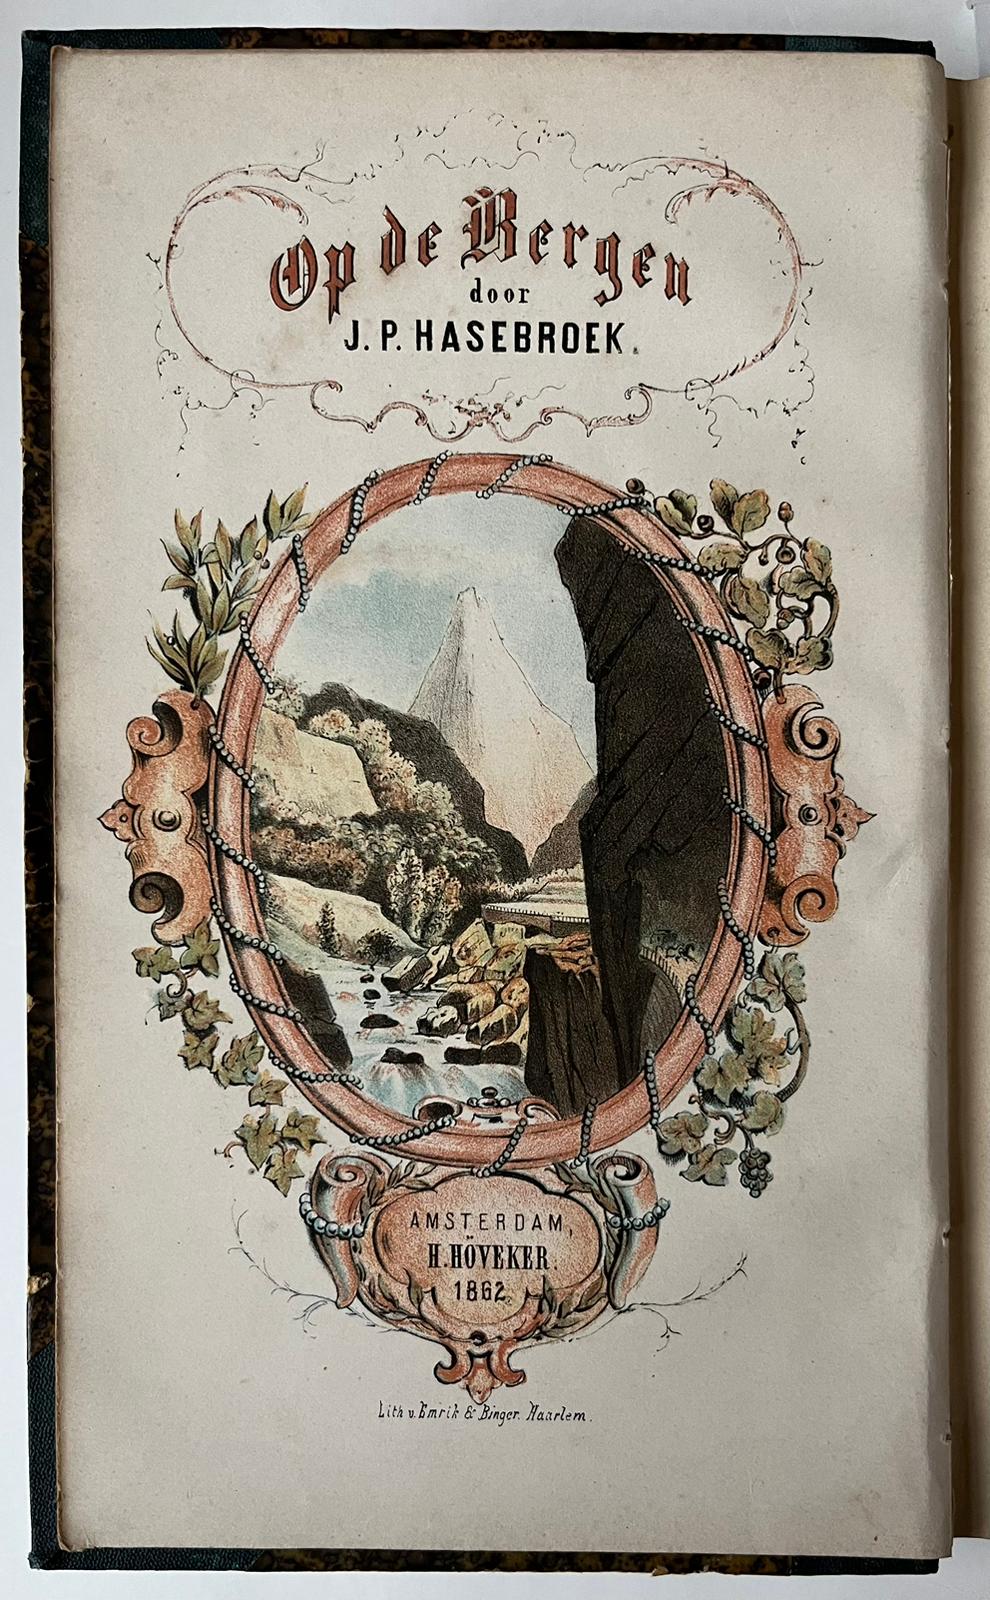 [Literature 1861-1862] Op de bergen. Herinneringen en indrukken van eenen reiziger door noordelijk Italië en Zwitserland. Amsterdam, H. Höveker, 1861-1862, 2 volumes